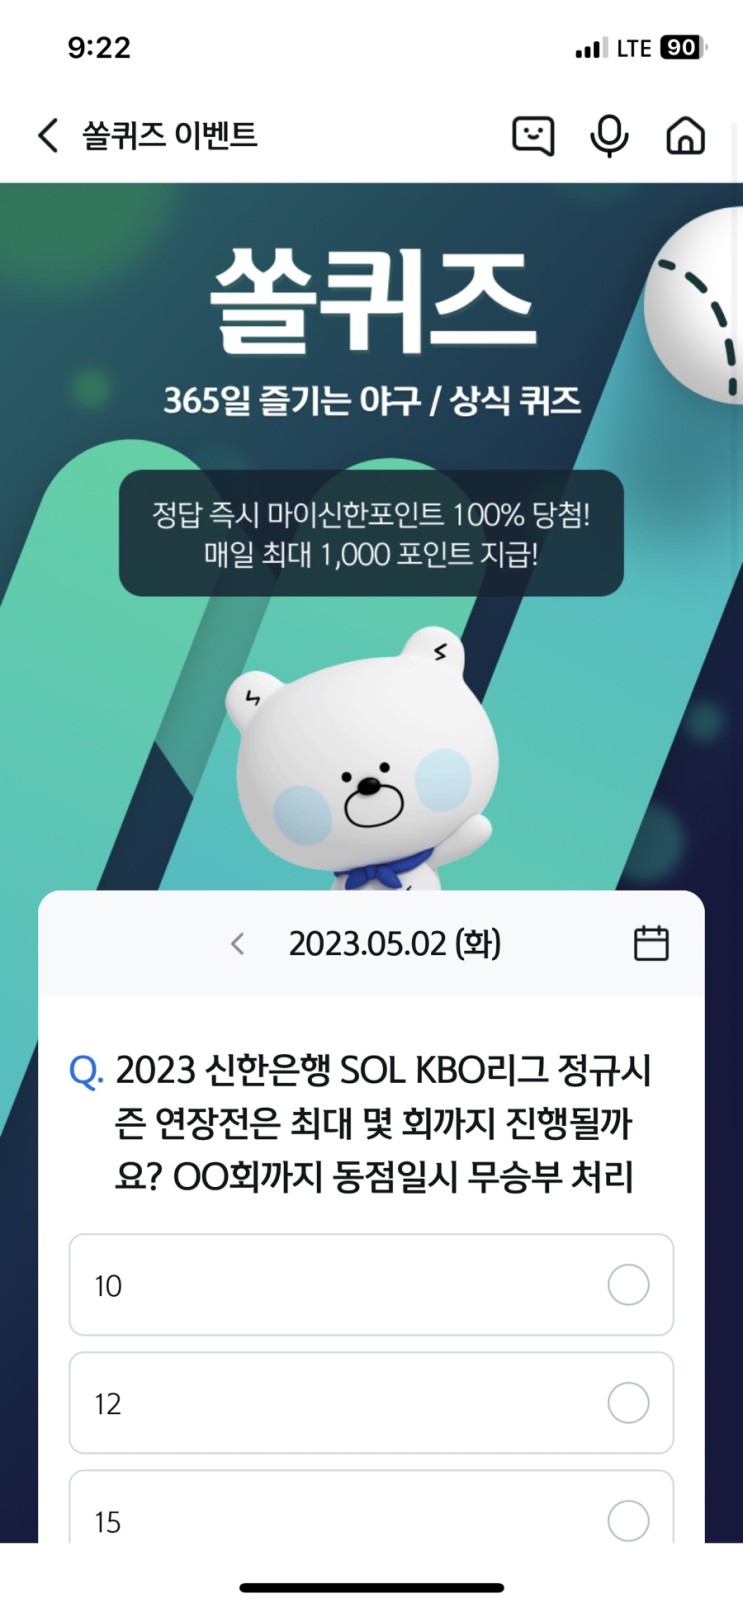 신한 쏠퀴즈 정답 (쏠야구) 5월2일 - KBO리그 정규시즌 연장전은 최대 몇 회까지 진행될까요? 동점일시 무승부 처리